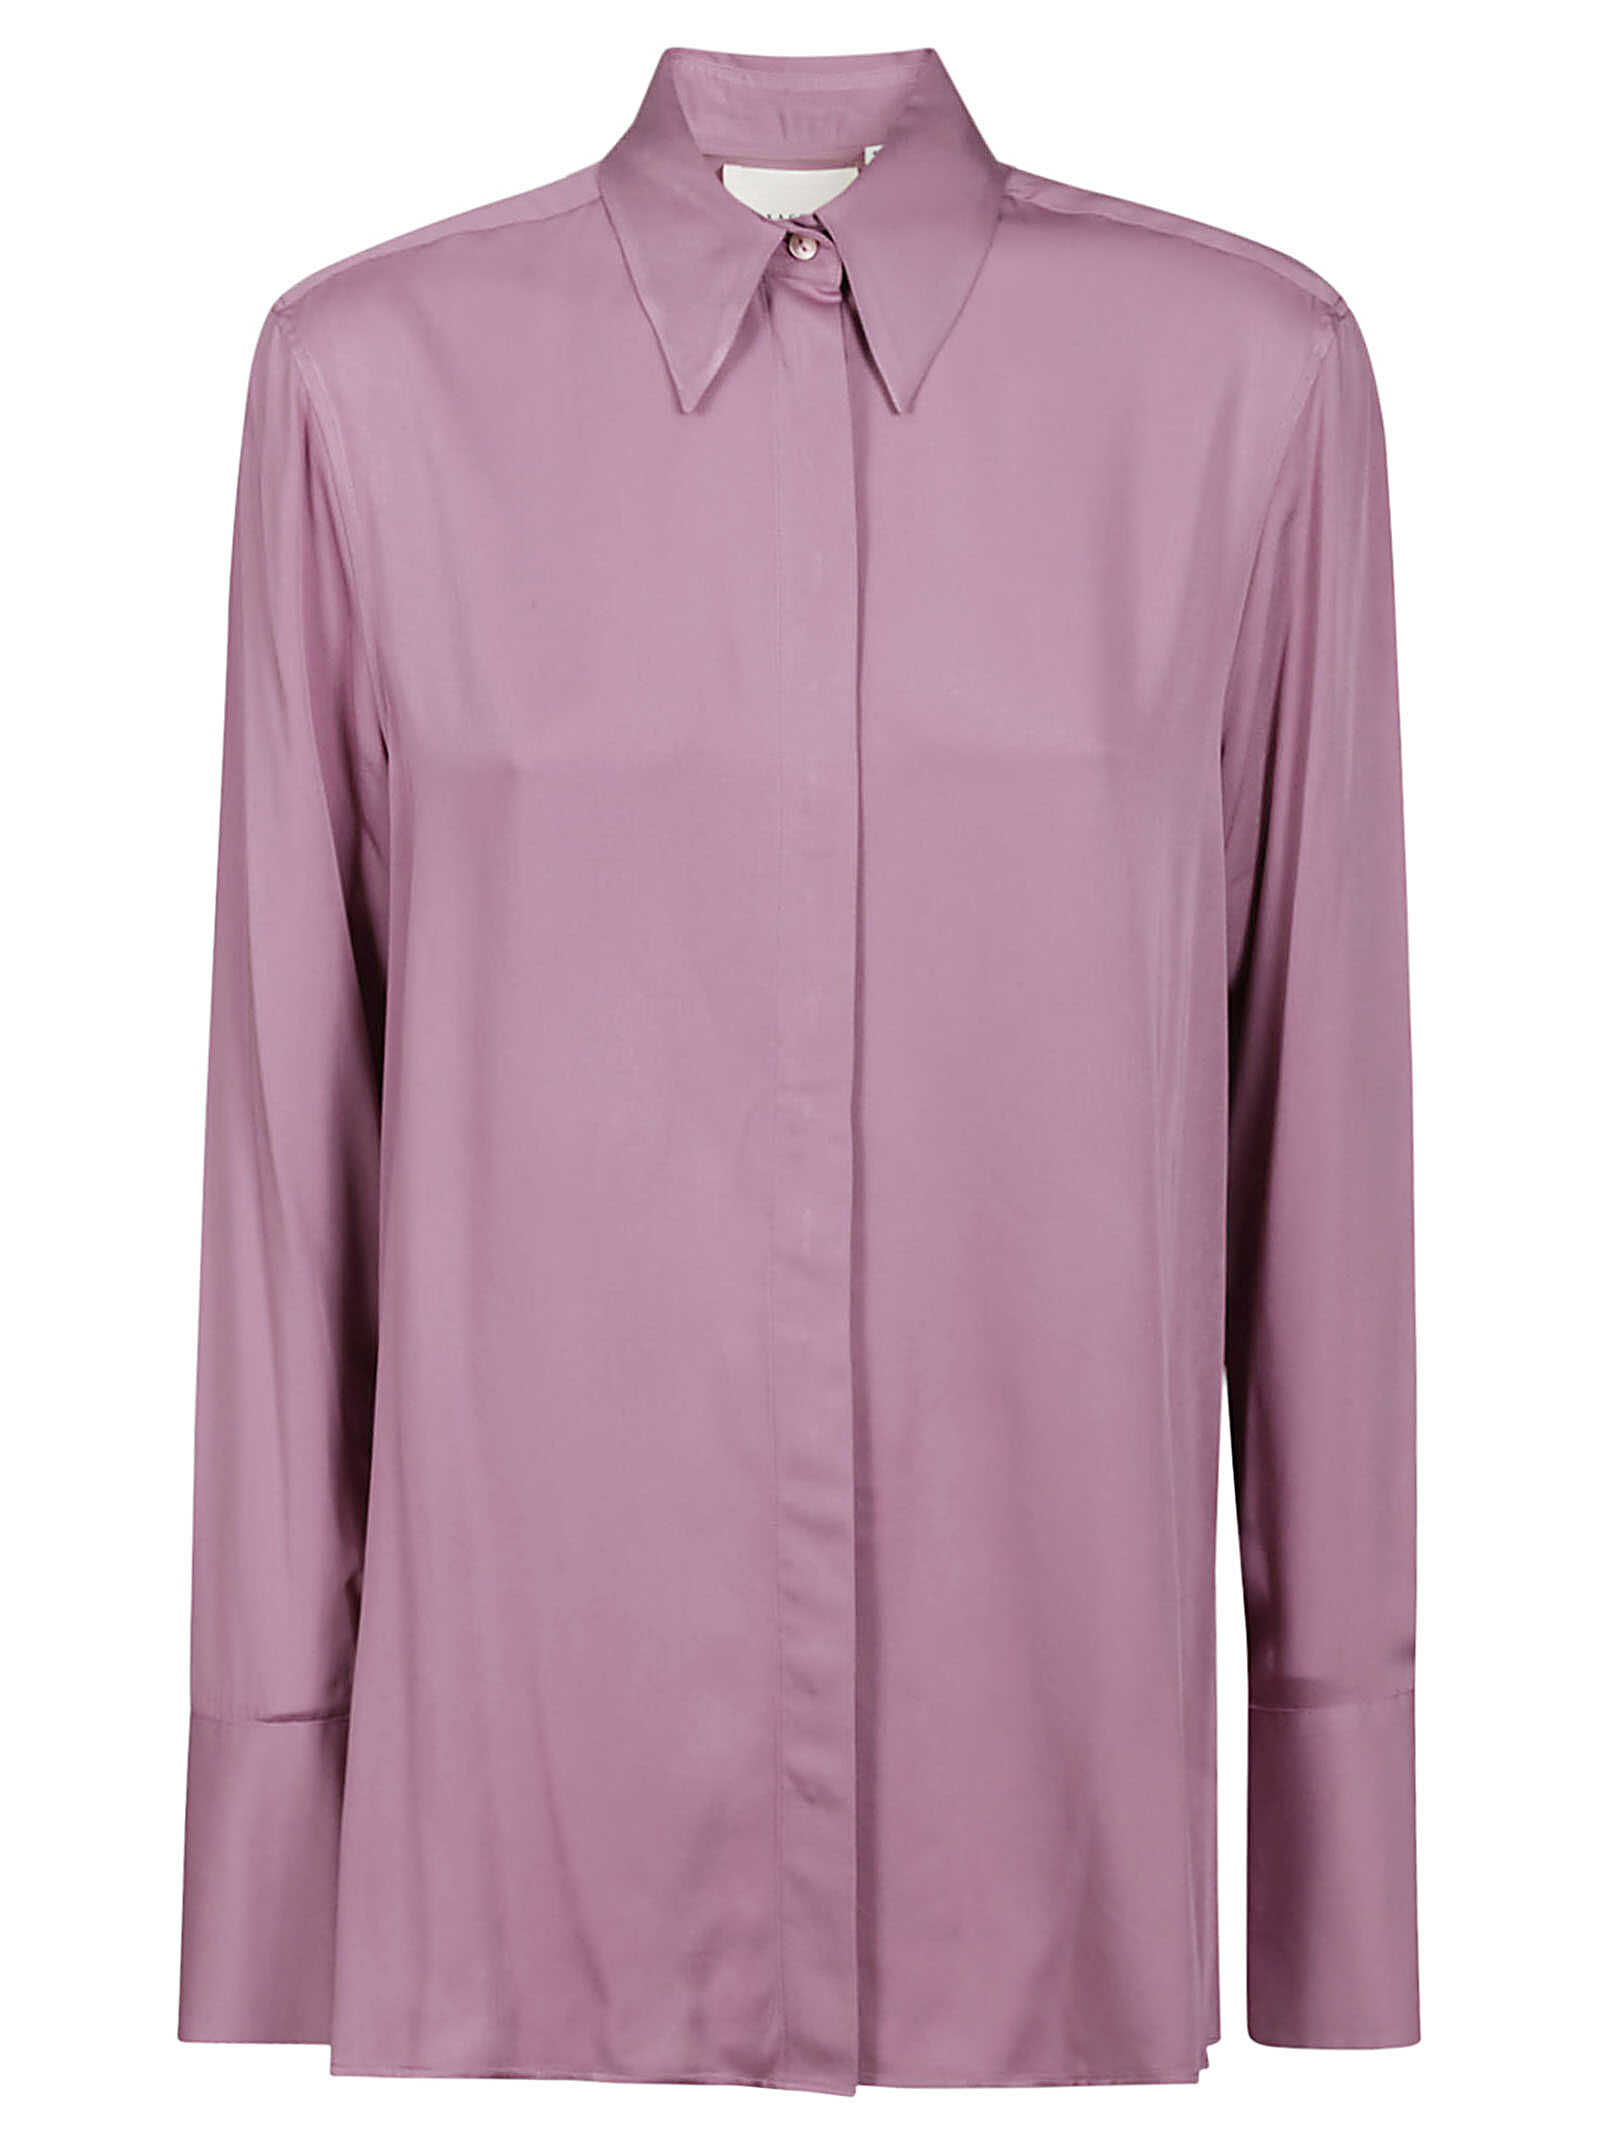 XACUS XACUS Shirt 55107 998 BLACK Pink